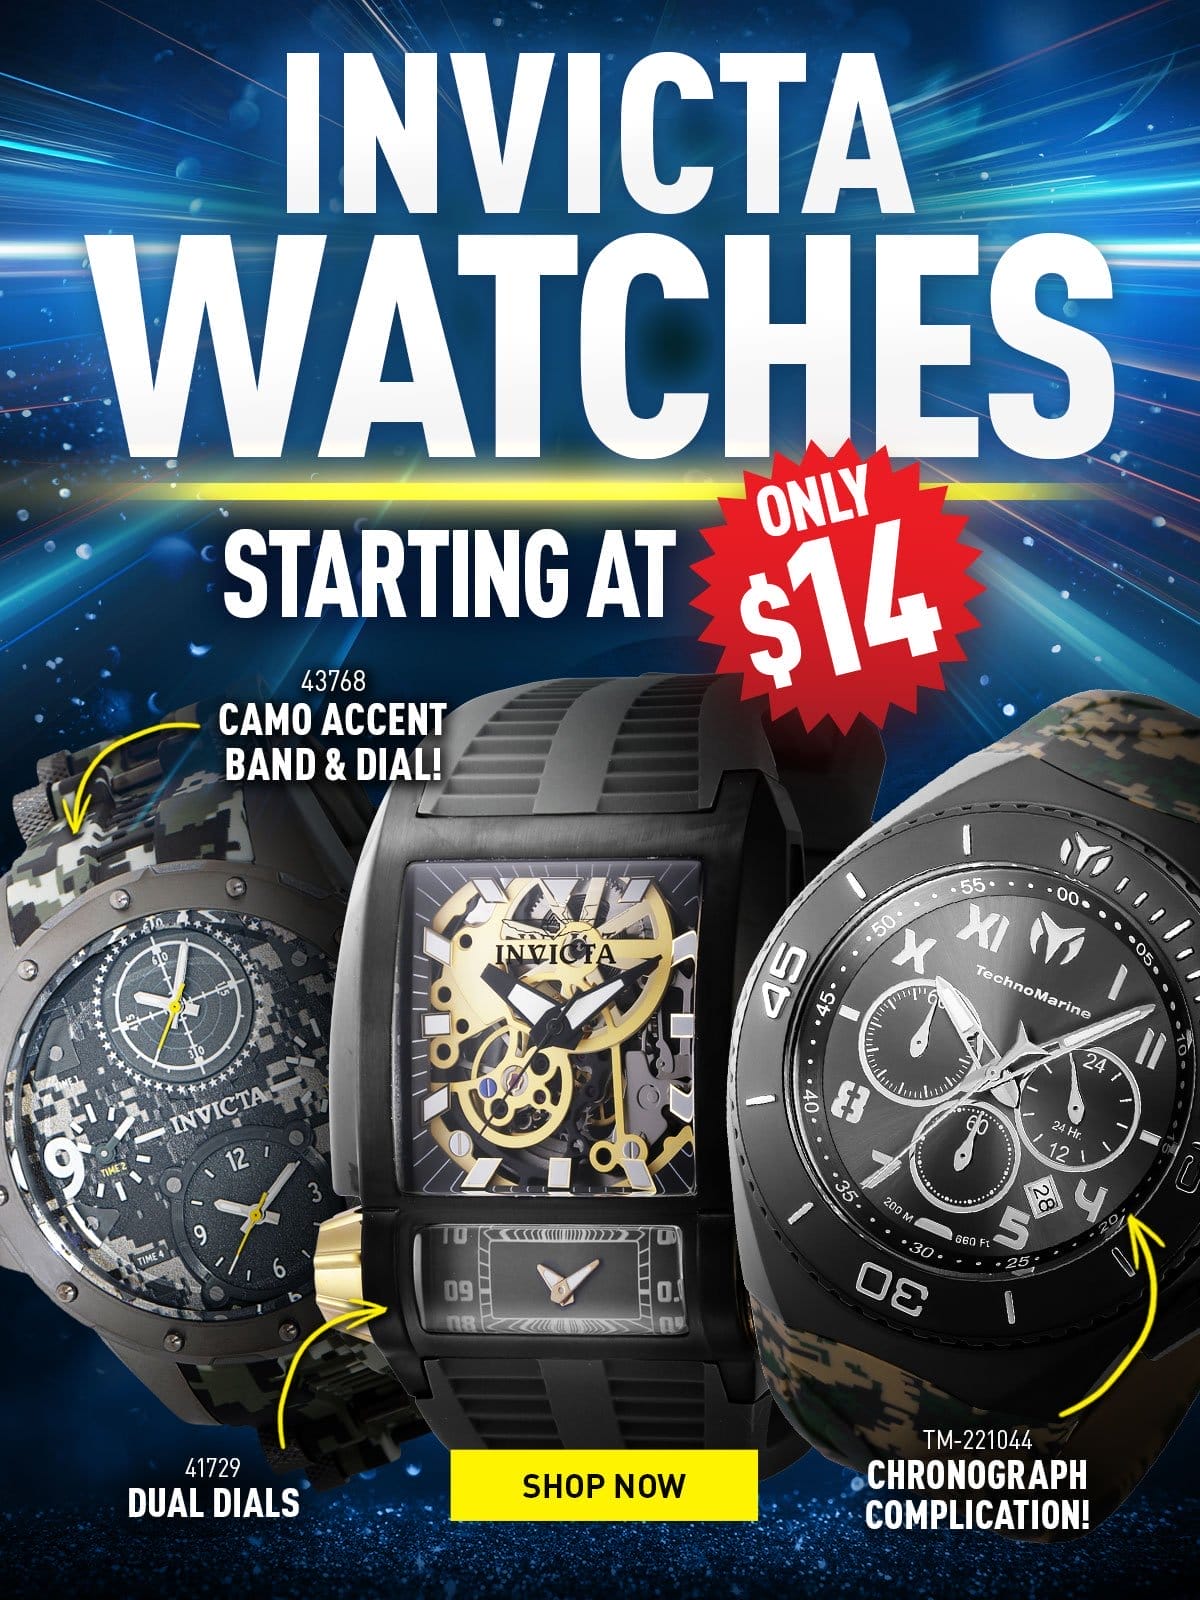 Smokin' hot liquidation deals! - Swiss watches at sizzlin' prices!!!